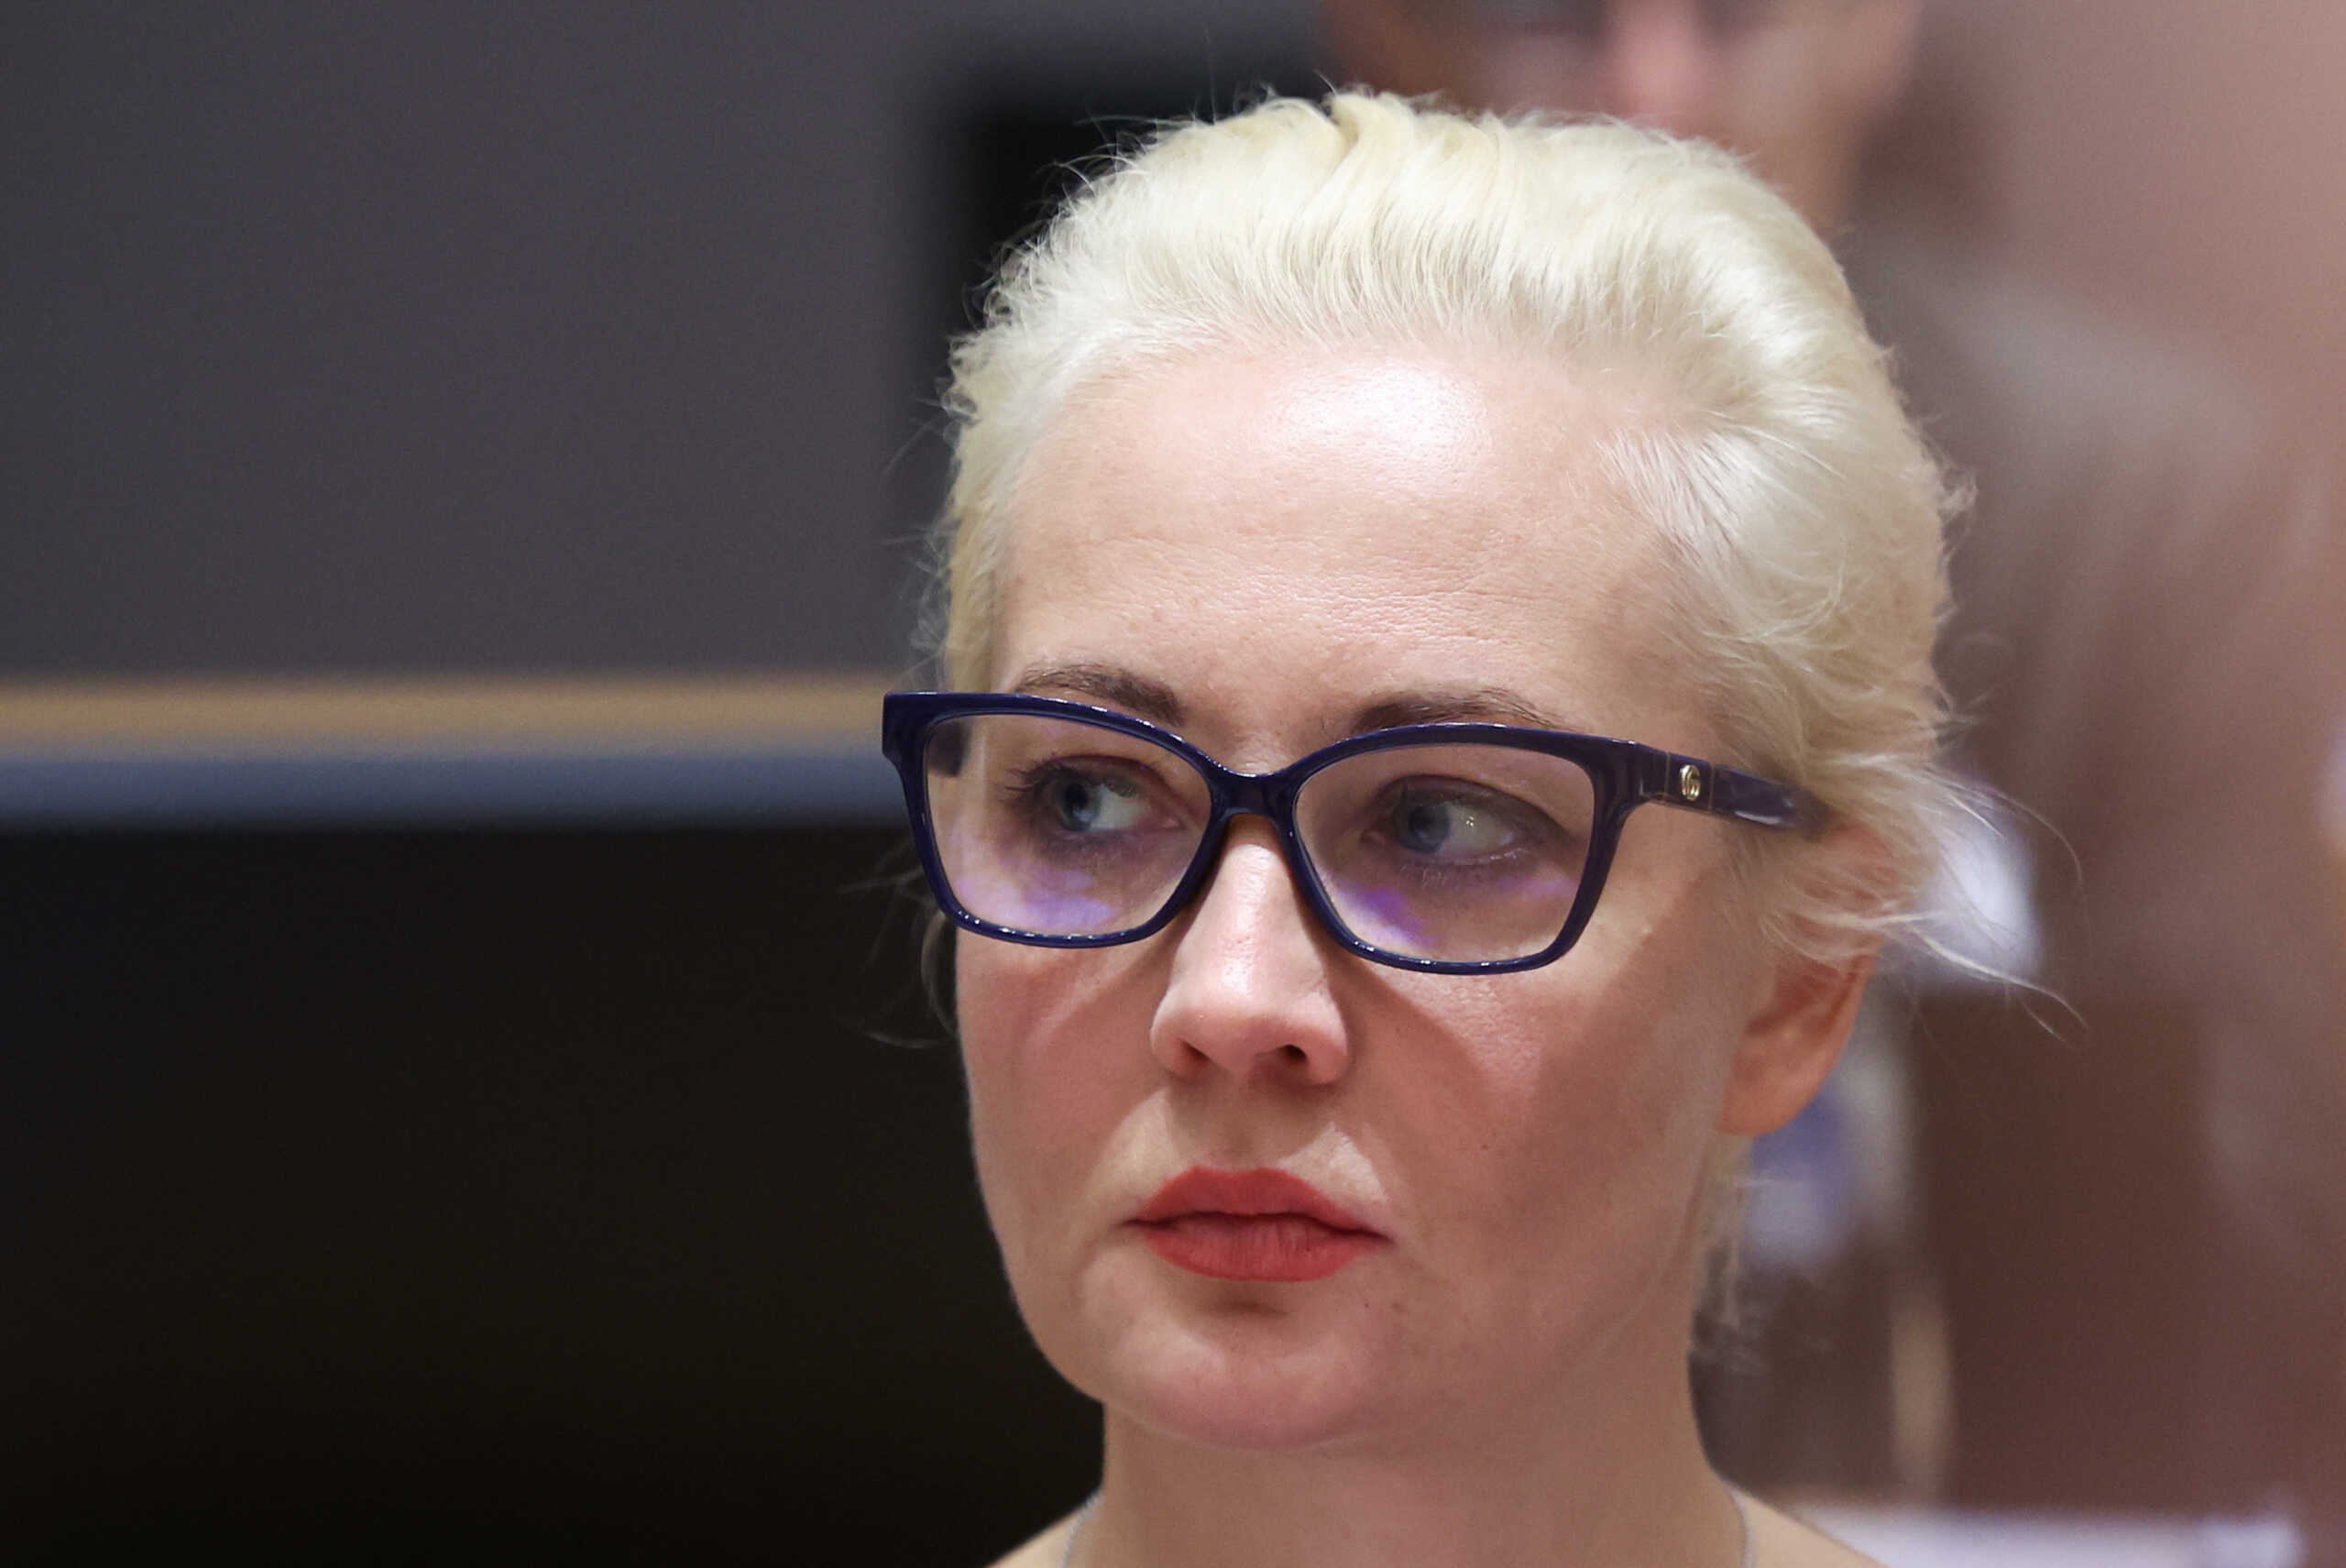 Αλεξέι Ναβάλνι: Ο Μπάιντεν κάλεσε την Γιούλια Ναβάλναγια στο Κογκρέσο αλλά αυτή αρνήθηκε